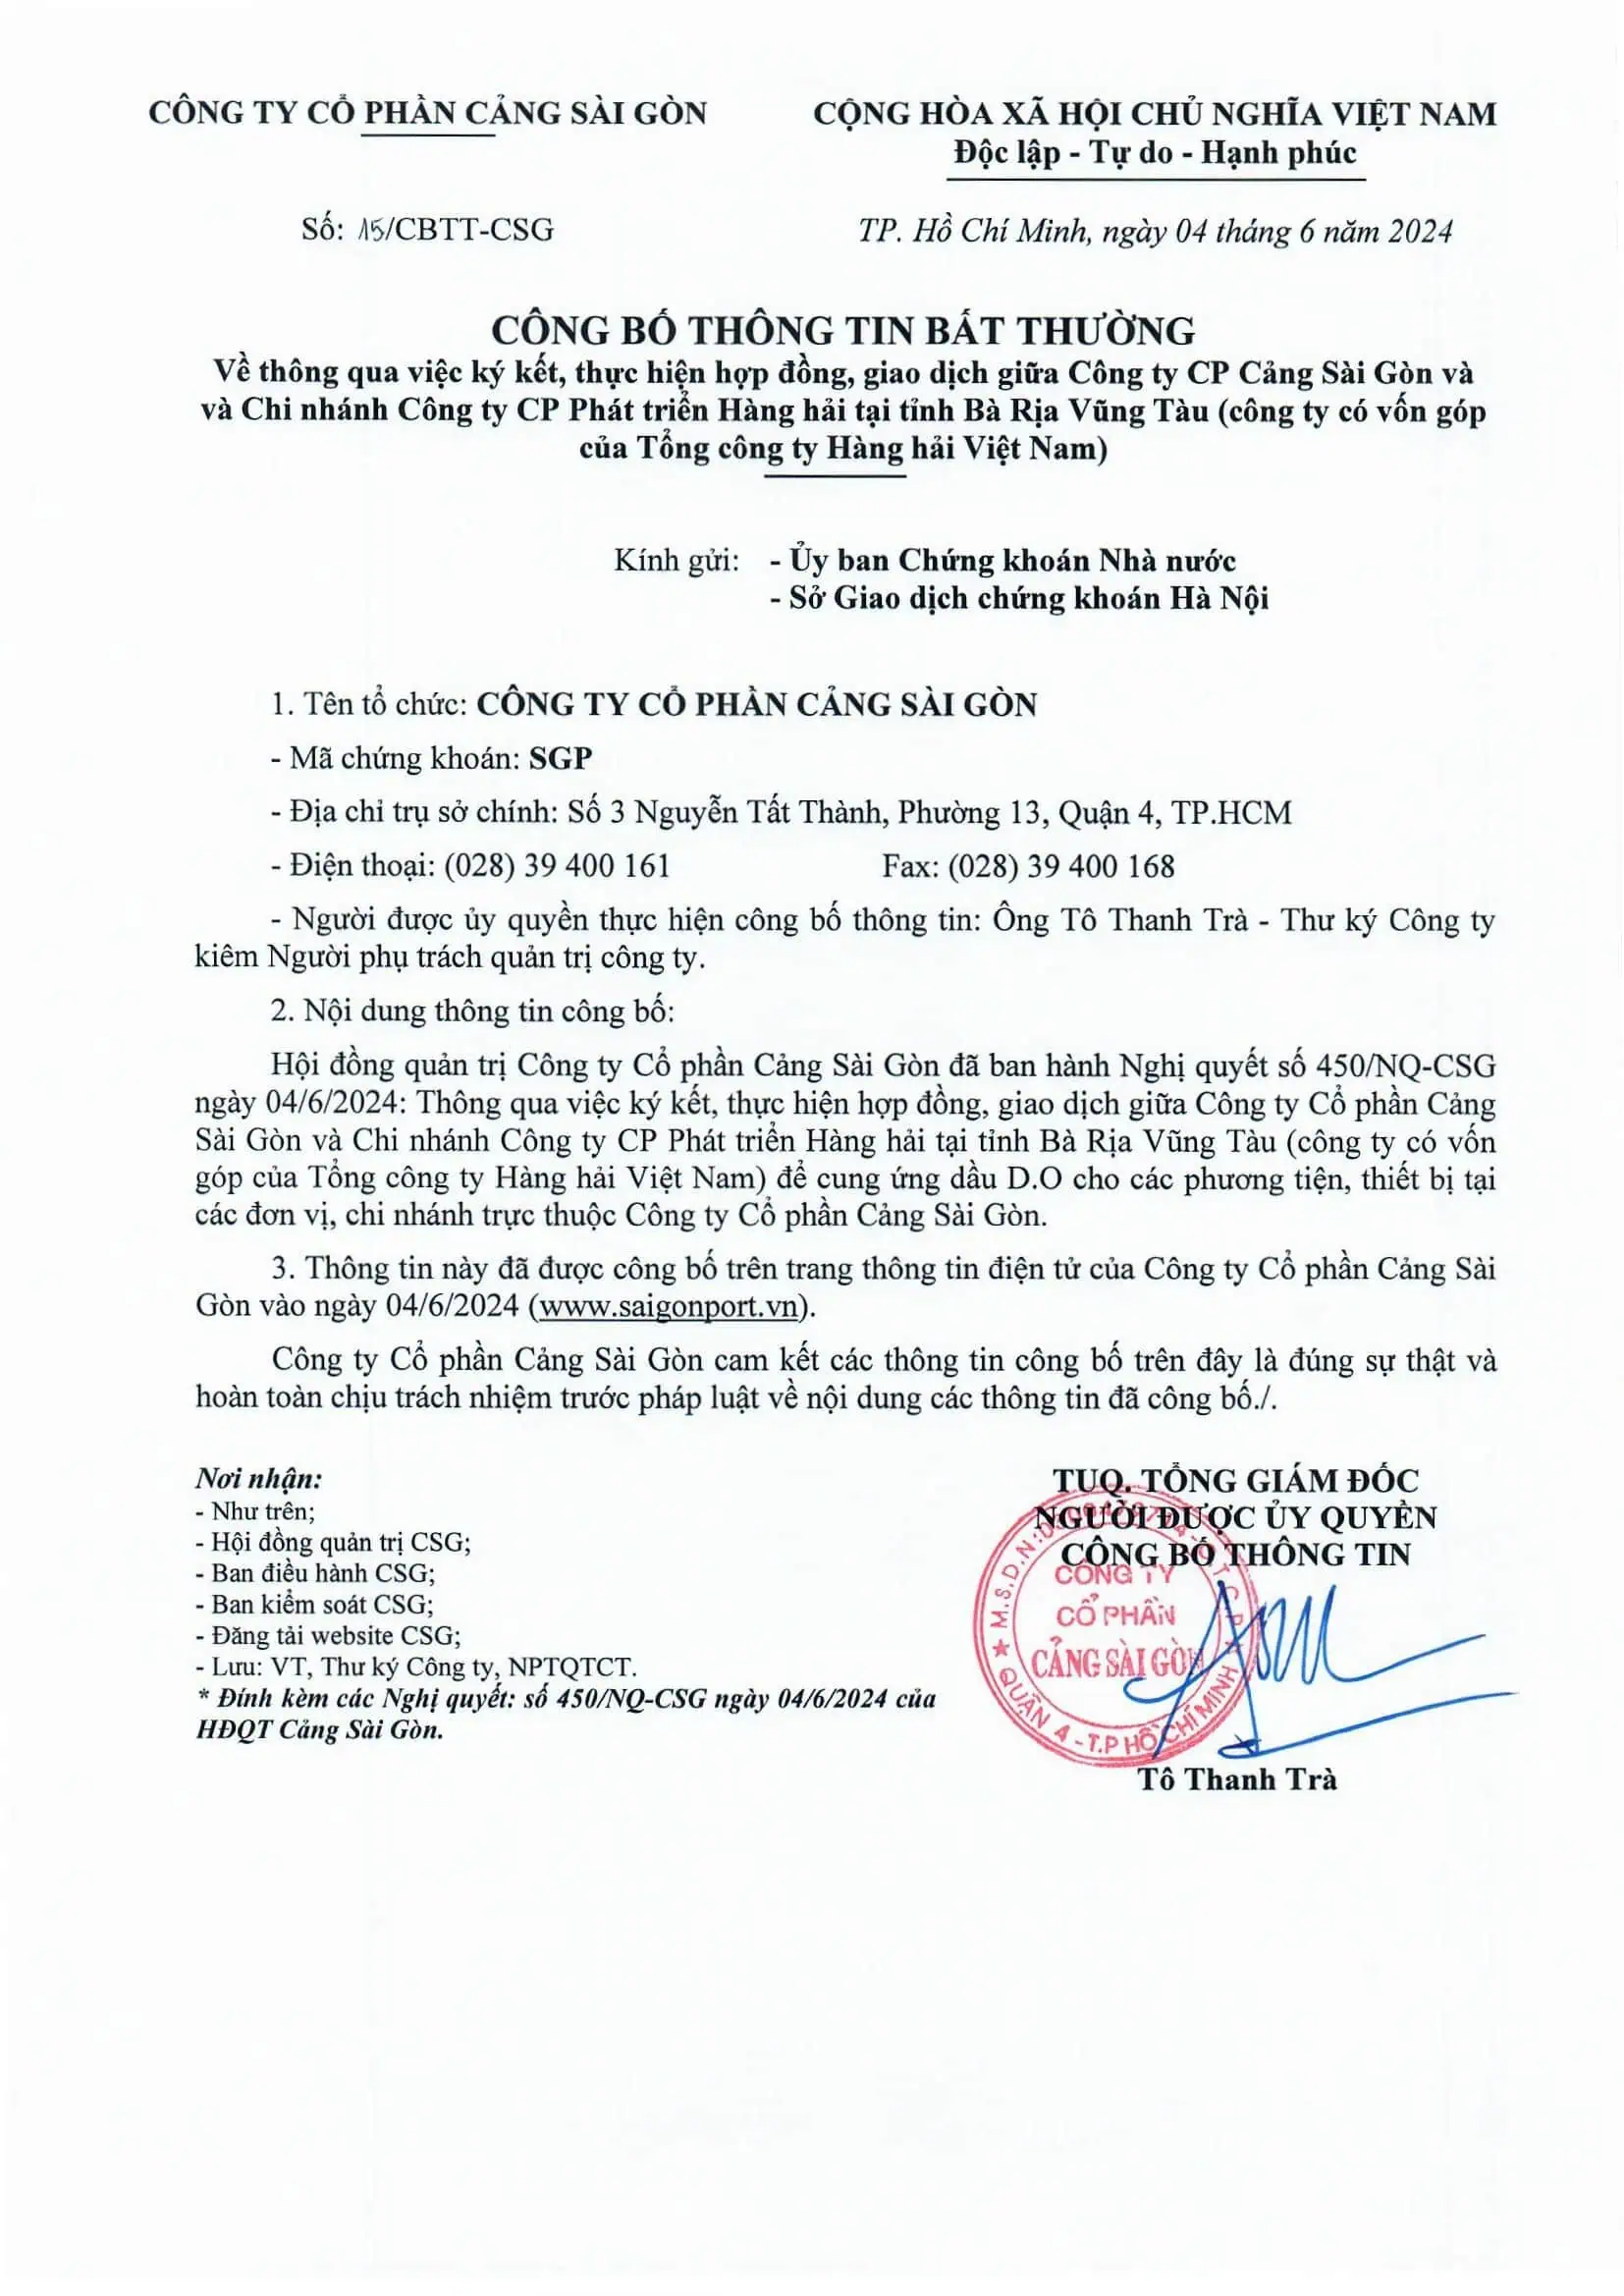 Công bố thông tin về thông qua ký kết, thực hiện hợp đồng, giao dịch giữa Công ty CP Cảng Sài Gòn và Chi nhánh Công ty CP Phát triển Hàng hải tại tỉnh Bà Rìa Vũng Tàu (công ty có vốn góp của Tổng công ty Hàng hải Việt Nam)